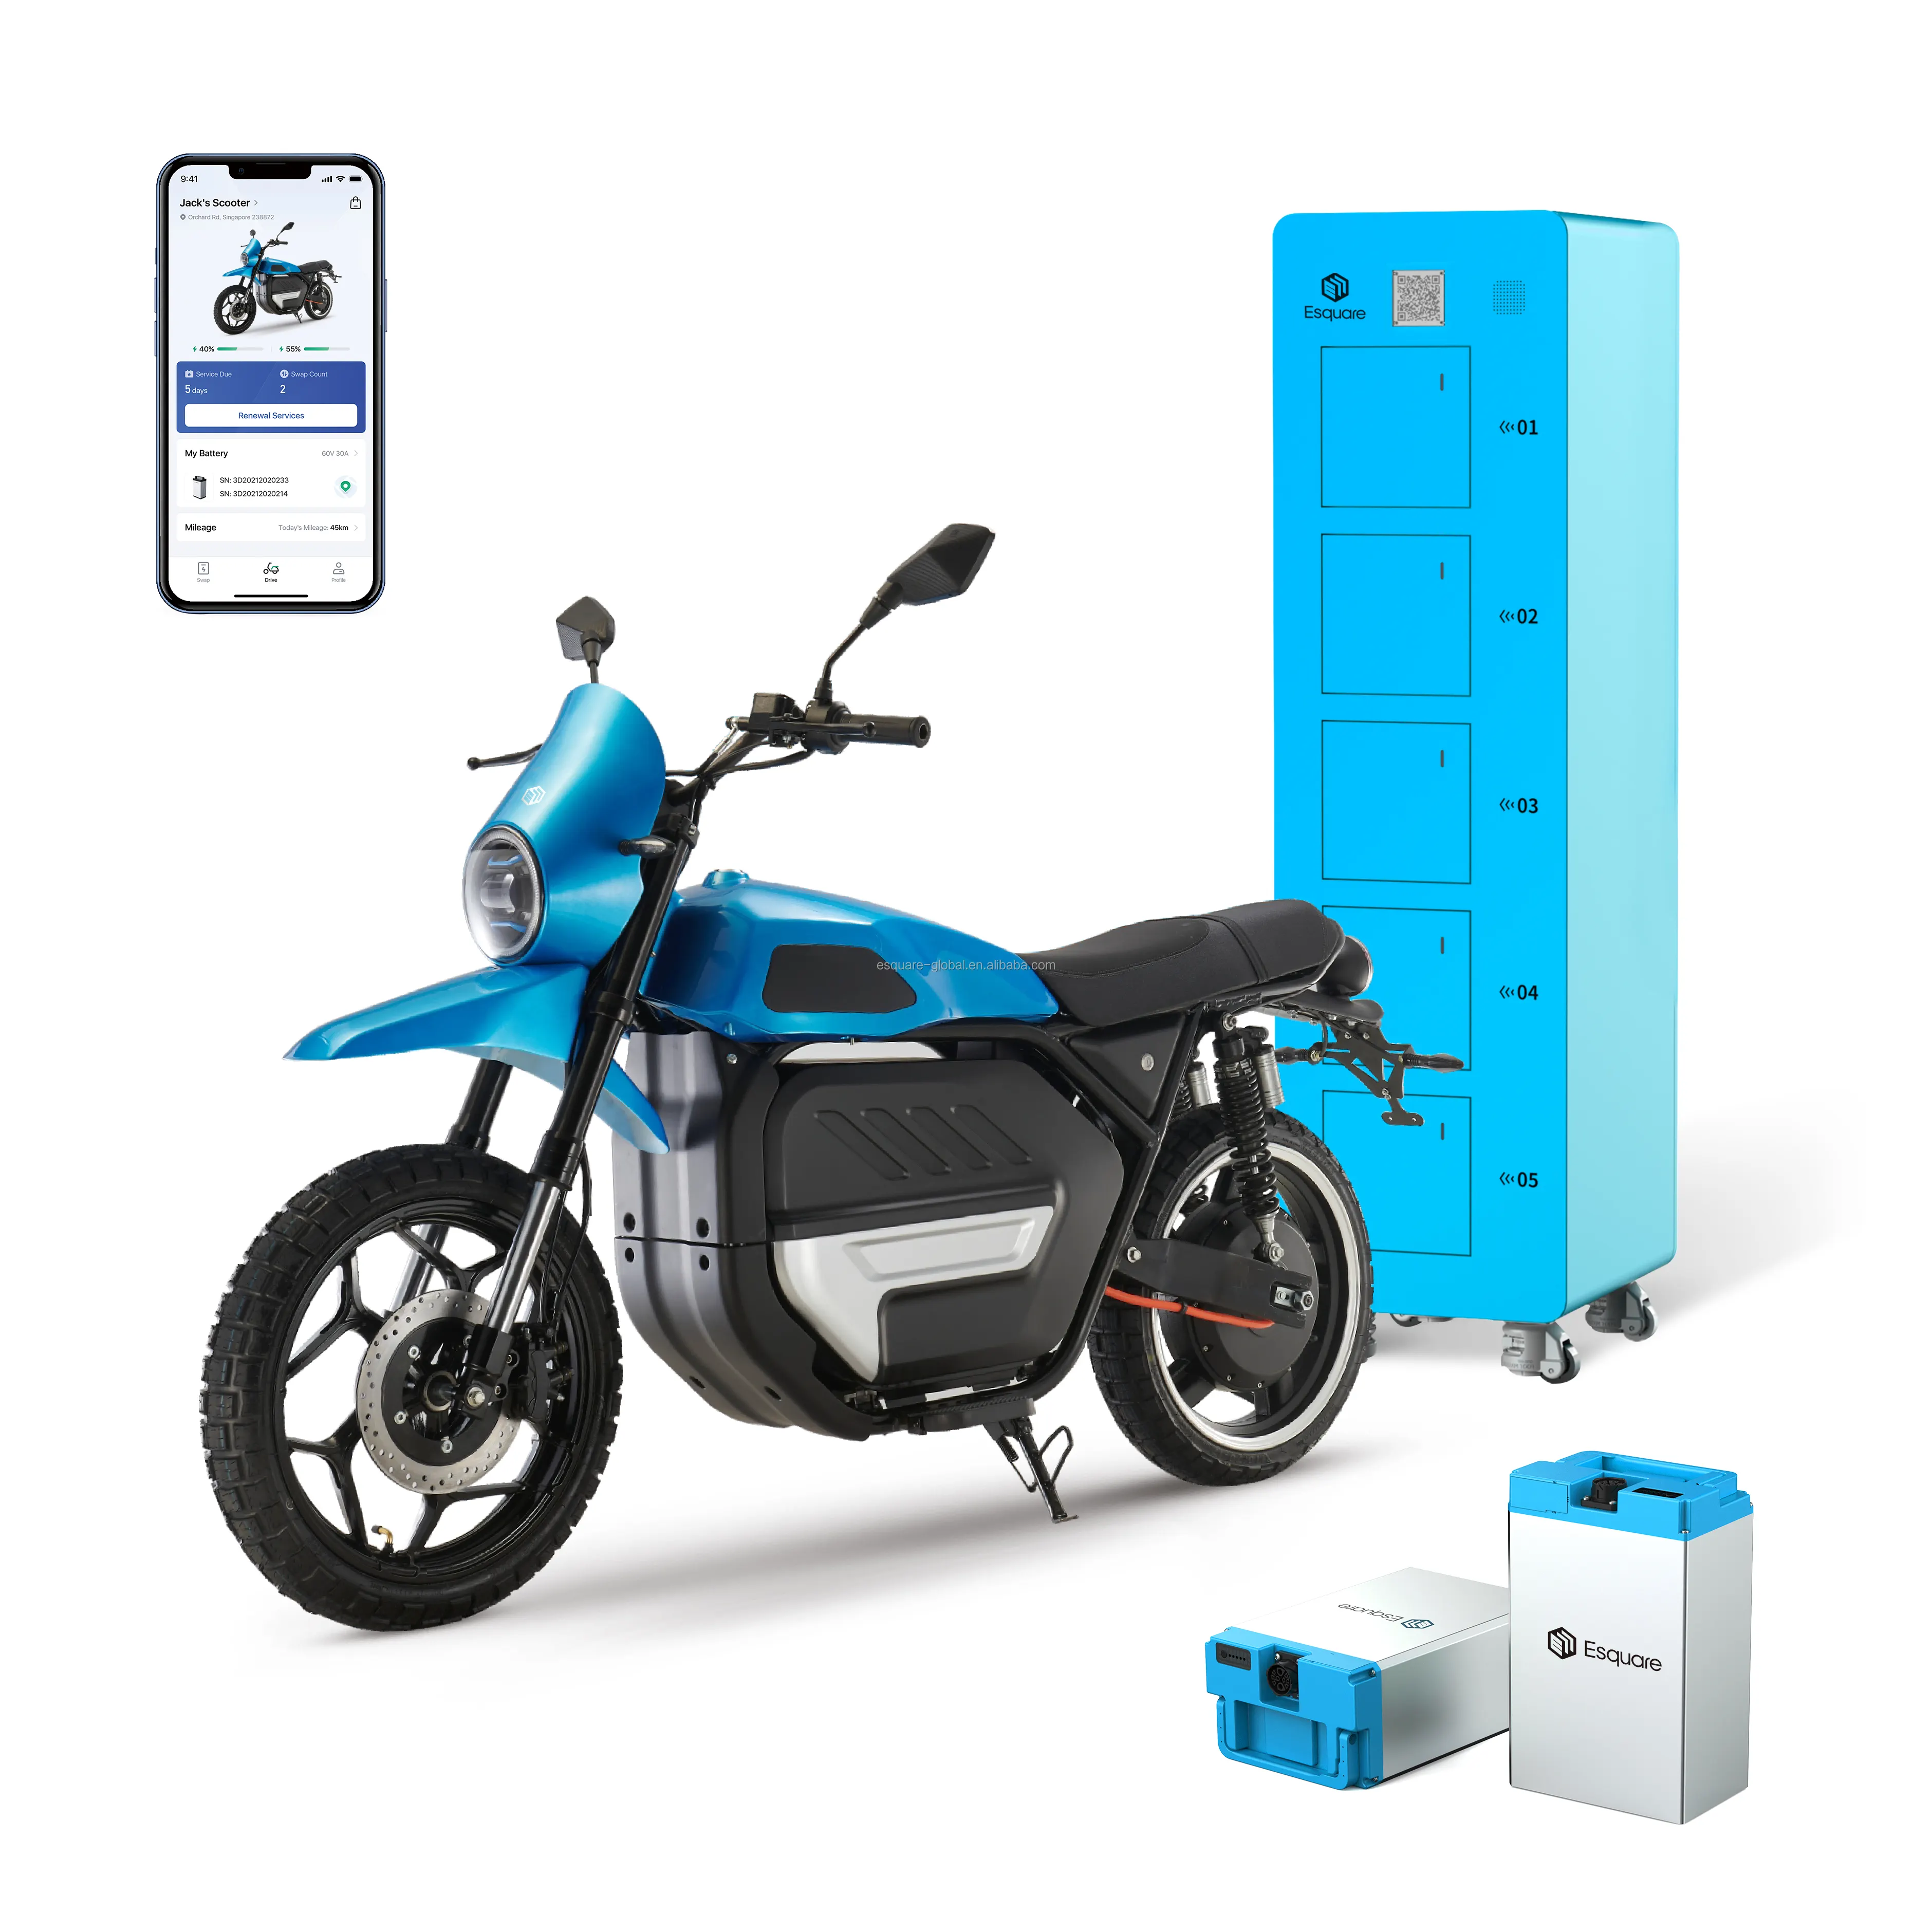 Station d'échange de batterie chargeur de moto chargeur de batterie Solution unique pour le fournisseur de systèmes de station d'échange de batterie